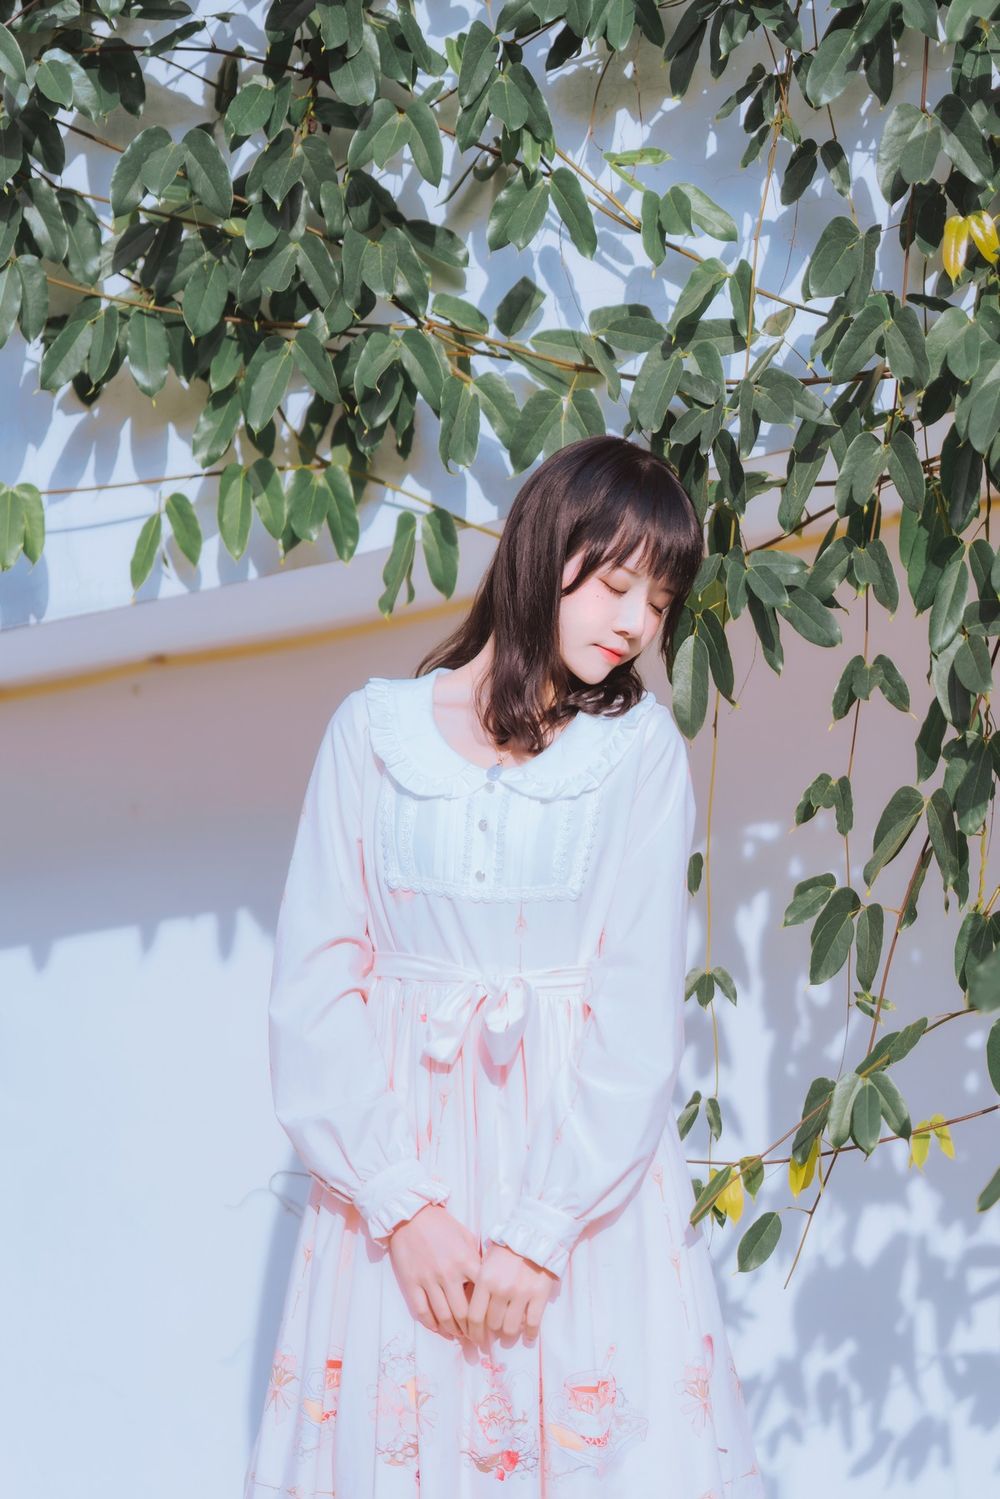 COSER桜桃喵粉色服饰+清纯连身裙秀完美身材户外写真